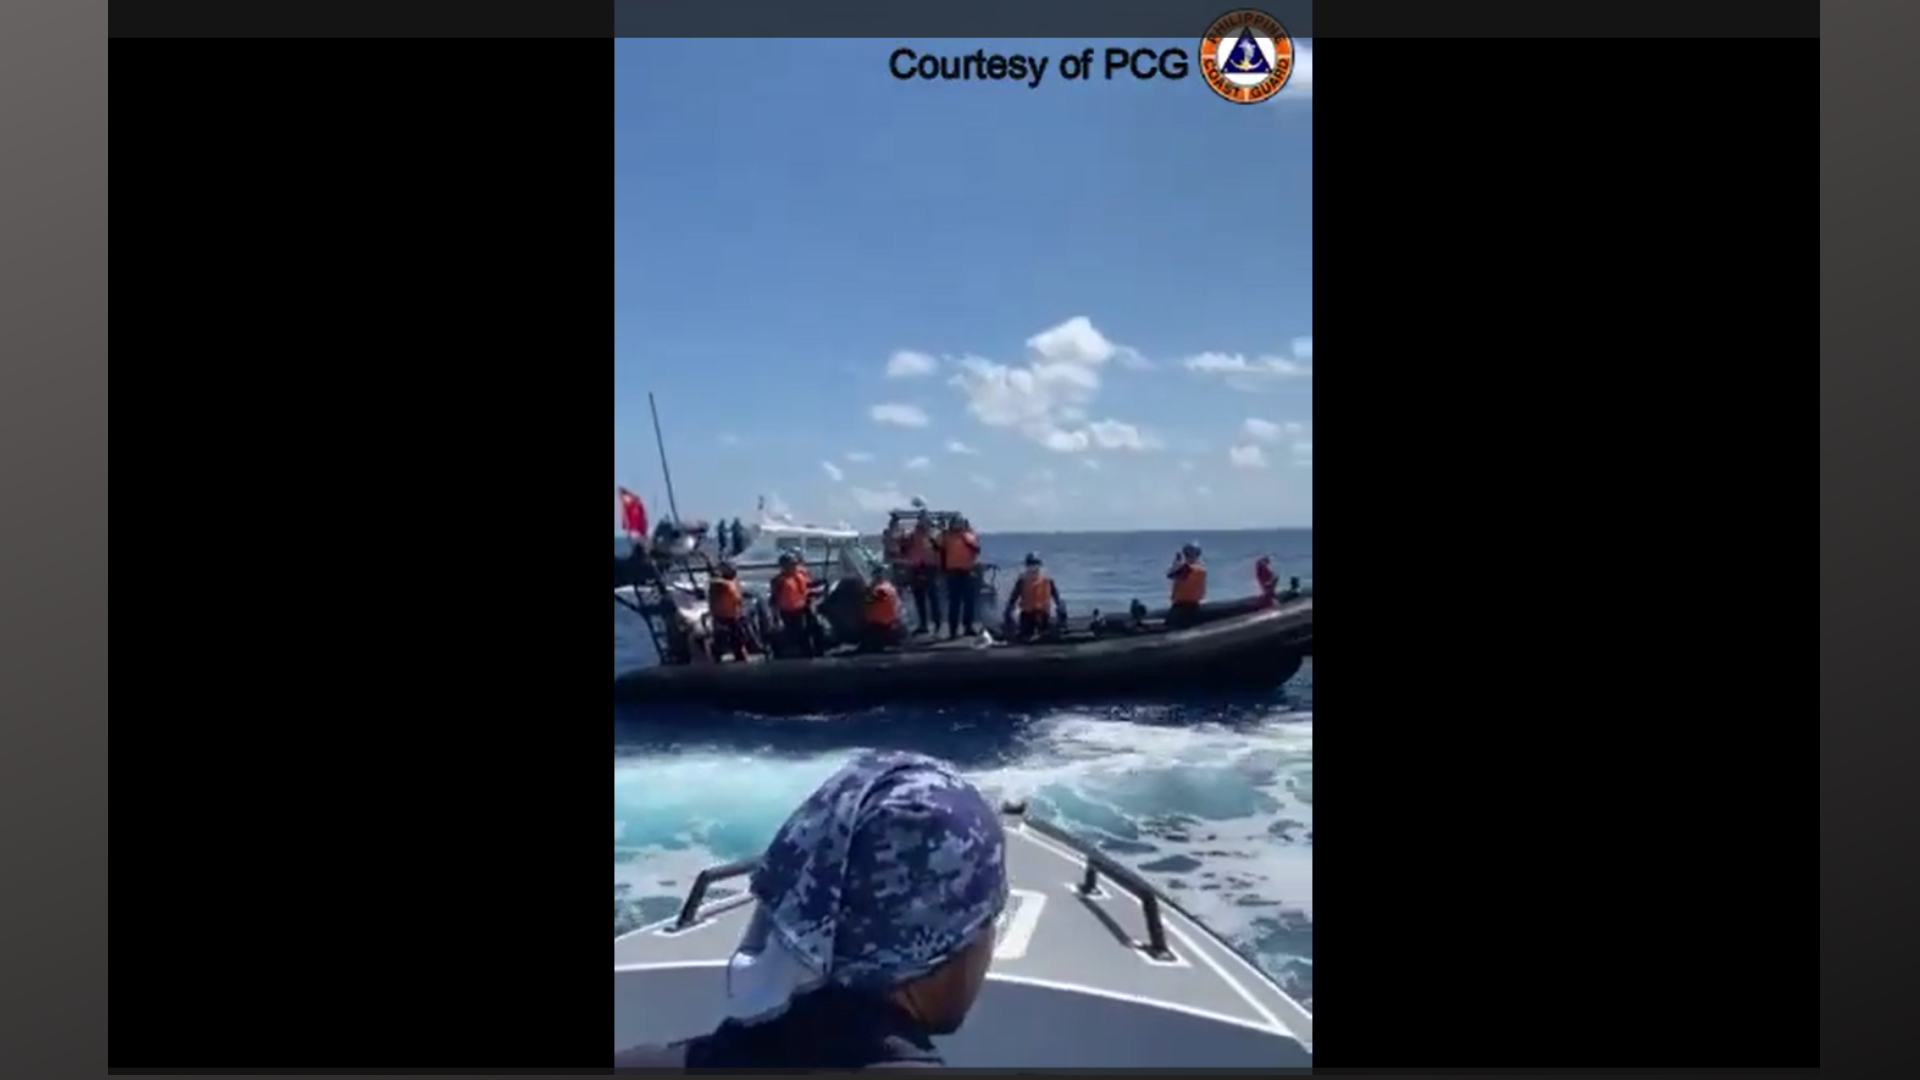 Mga barko at bangka ng China hinarangan at binangga ang PH boat na nagsasagawa ng medical evacuation sa West PH Sea